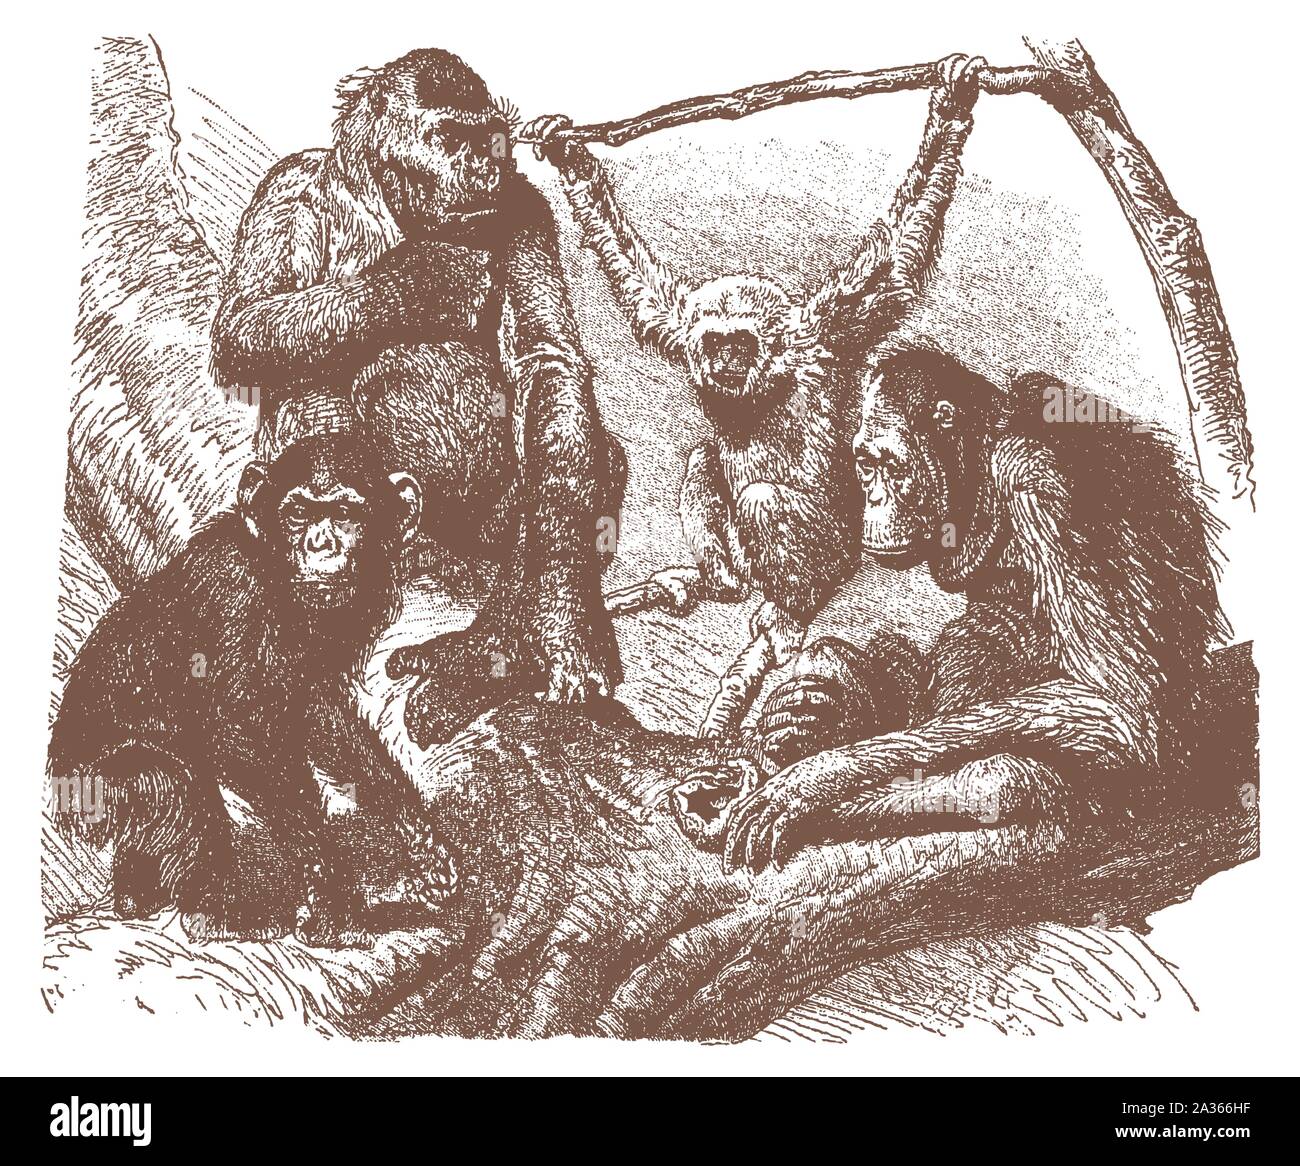 Gorila, chimpancé, plata el gibón y el orangután sentado en un árbol. Ilustración tras una litografía grabado desde principios del siglo XX Ilustración del Vector